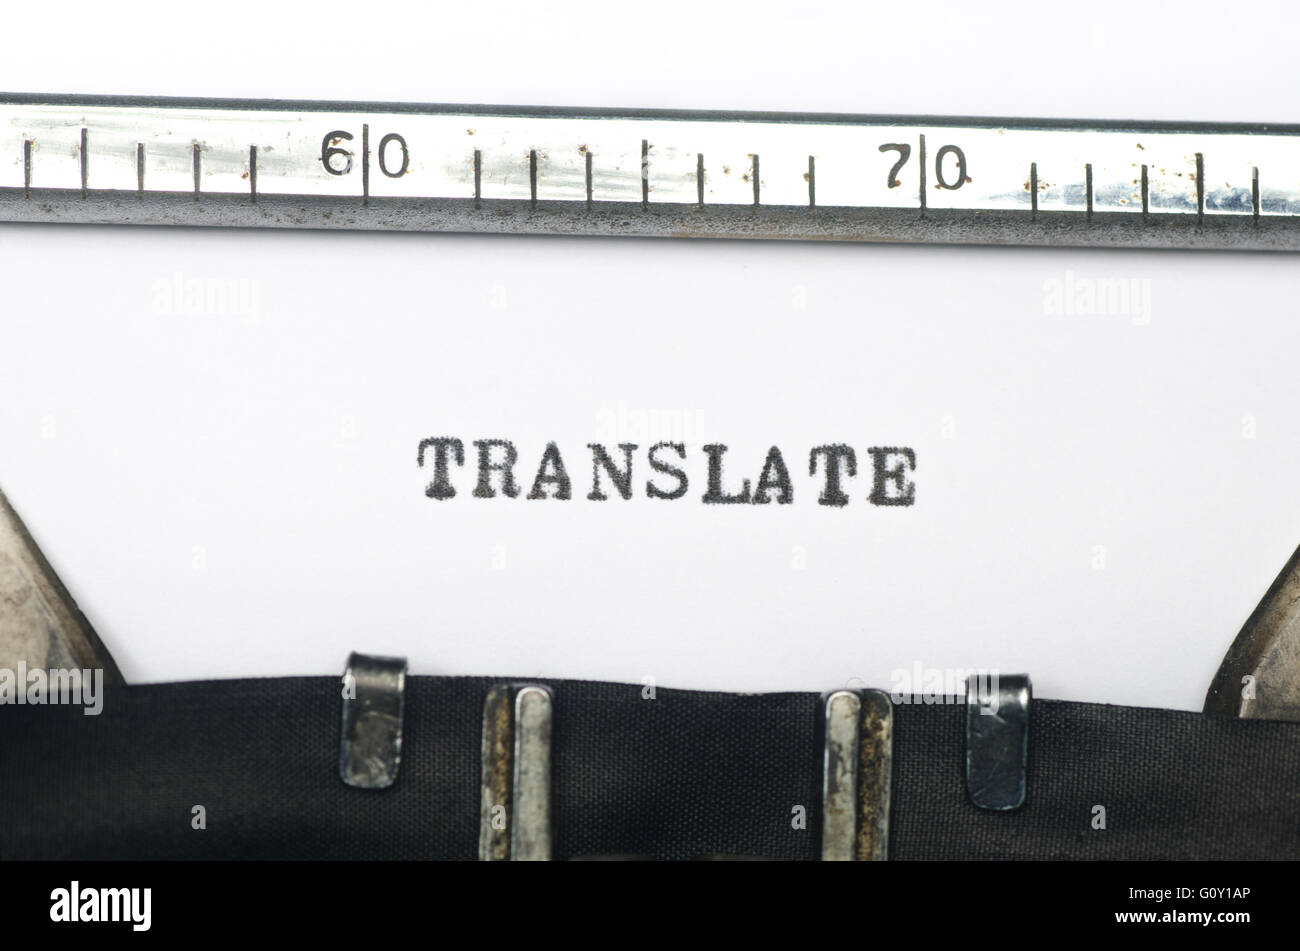 Translate mot tapé sur une vieille machine à écrire Banque D'Images